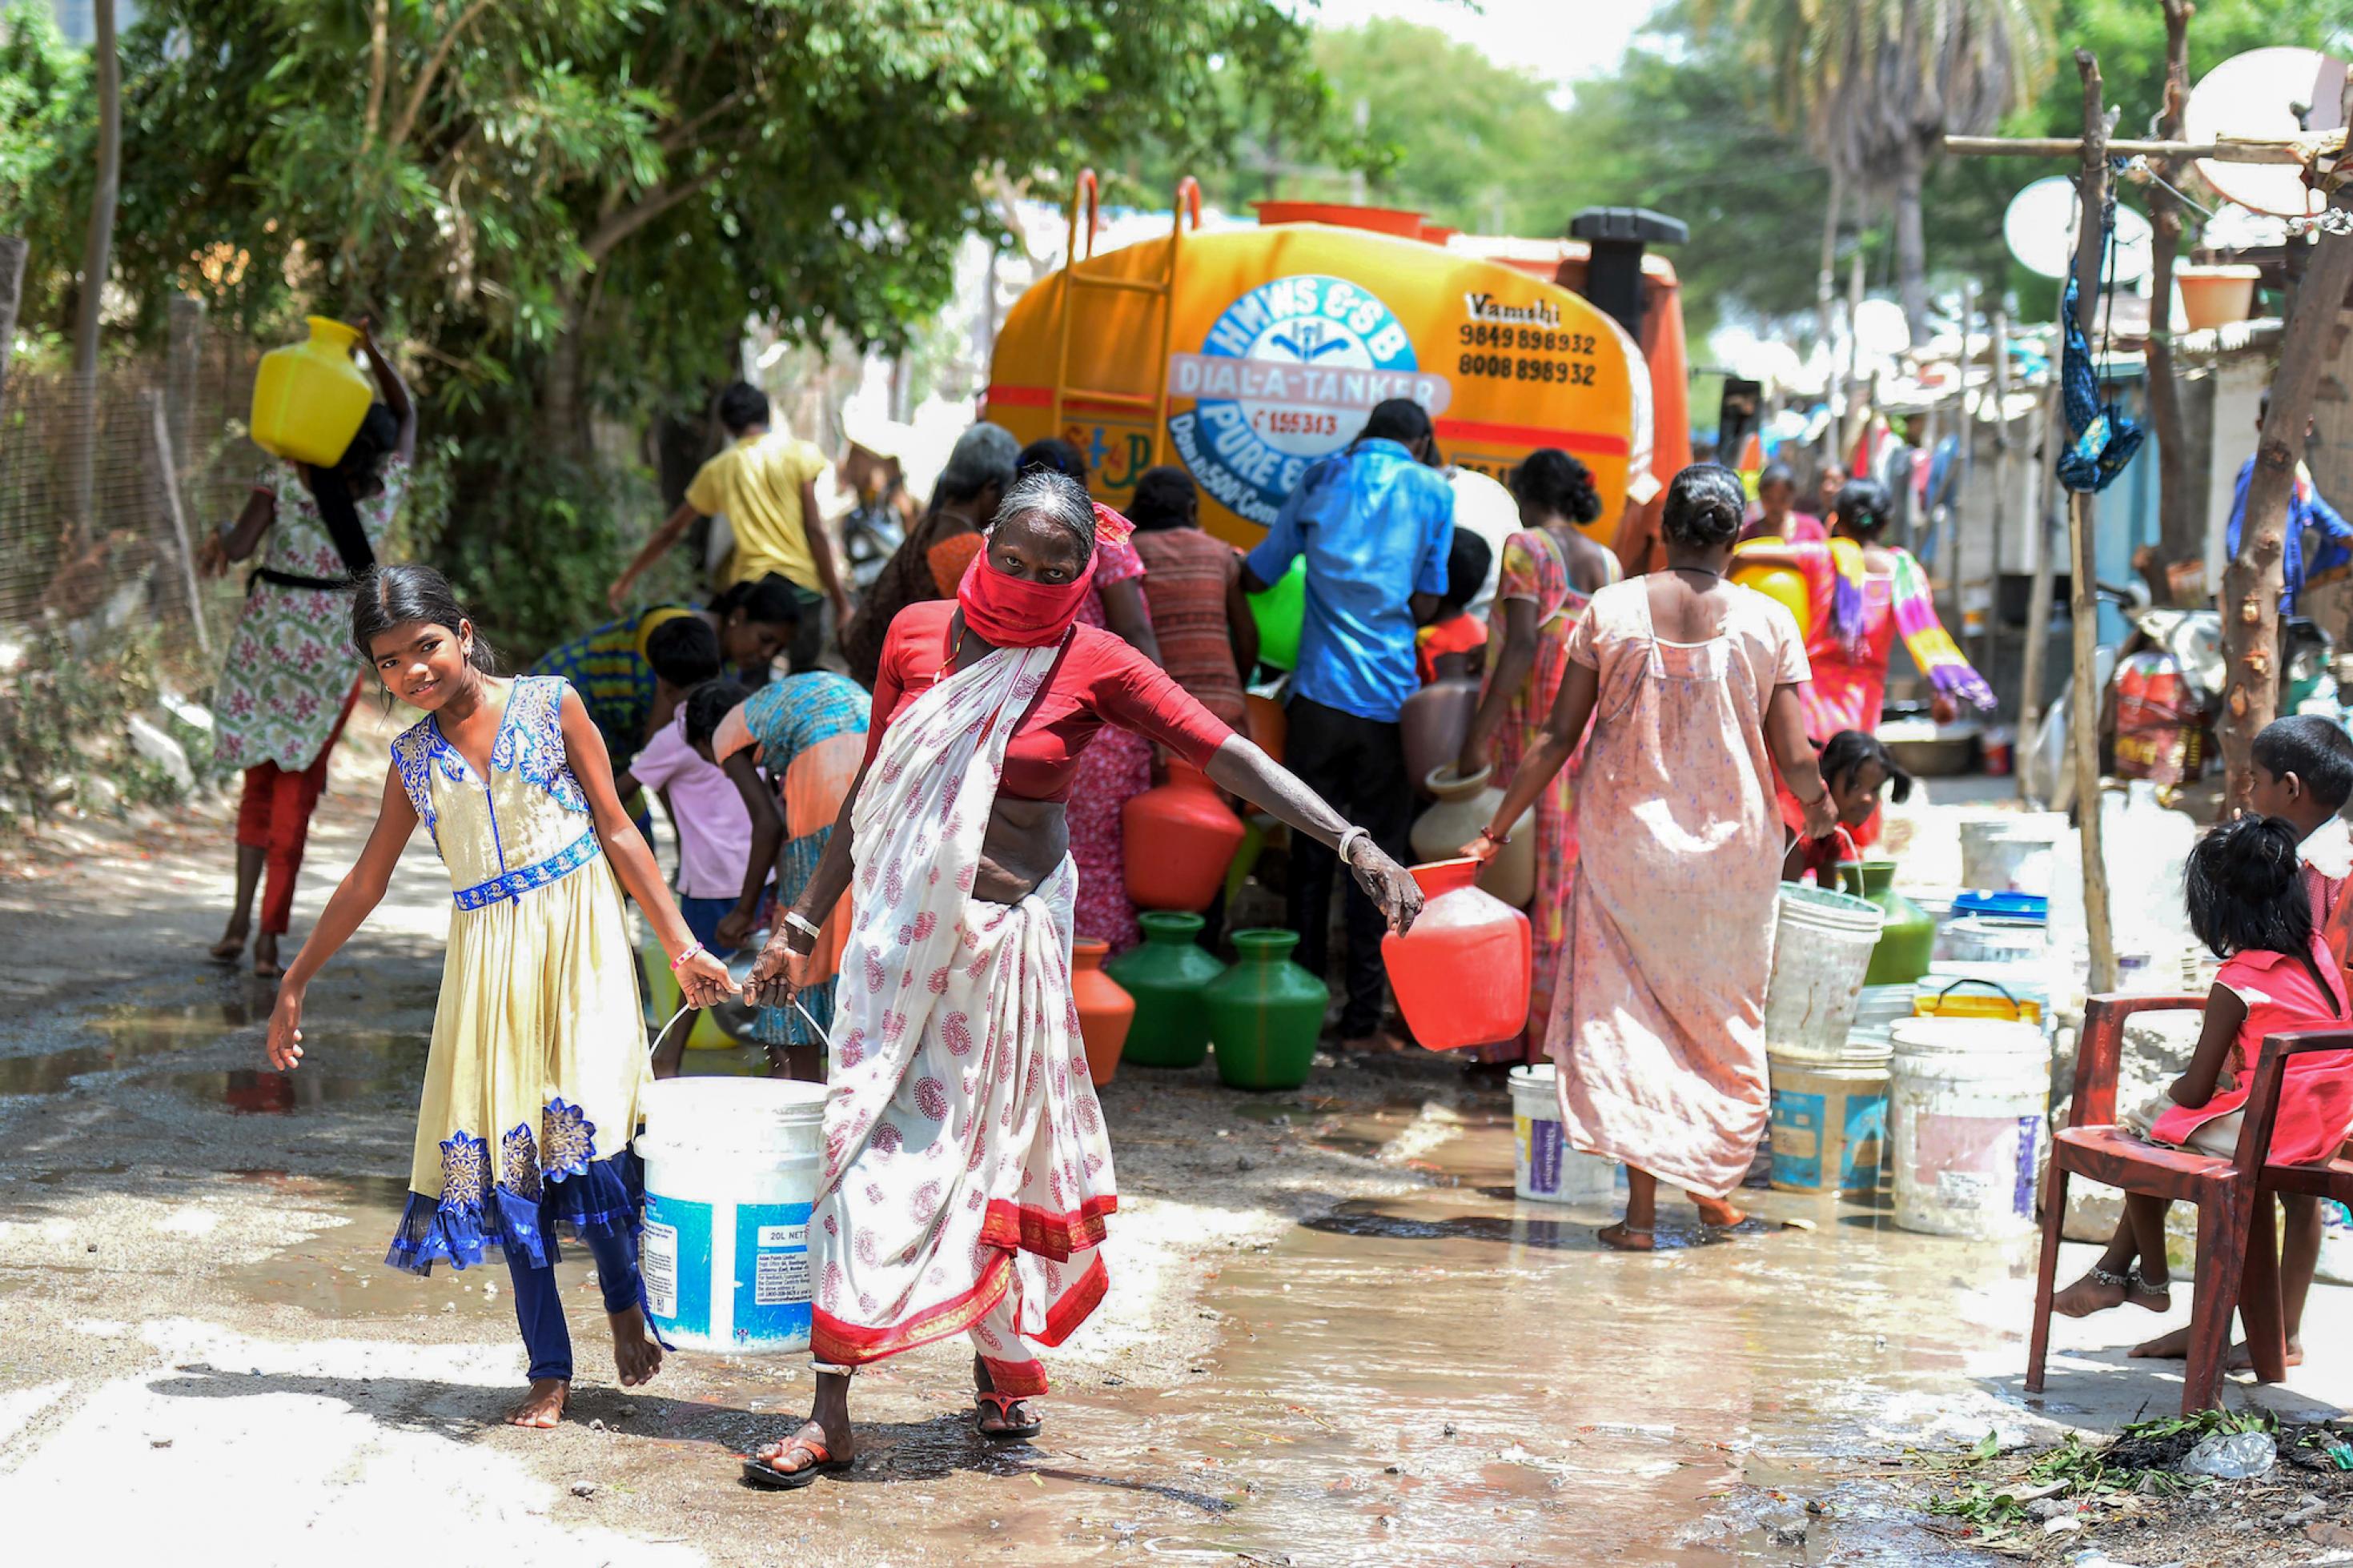 Die gezeigte Szene stammt aus dem Mai 2020. In einem Slum im indischen Secunderabad bringt ein Lastwagen kostenloses Trinkwasser. Viele Menschen stehen um den Lastwagen herum und versuchen, etwas abzubekommen. Eine Frau und ein Mädchen waren erfolgreich. Sie tragen einen großen Wasserbehälter nachhause.